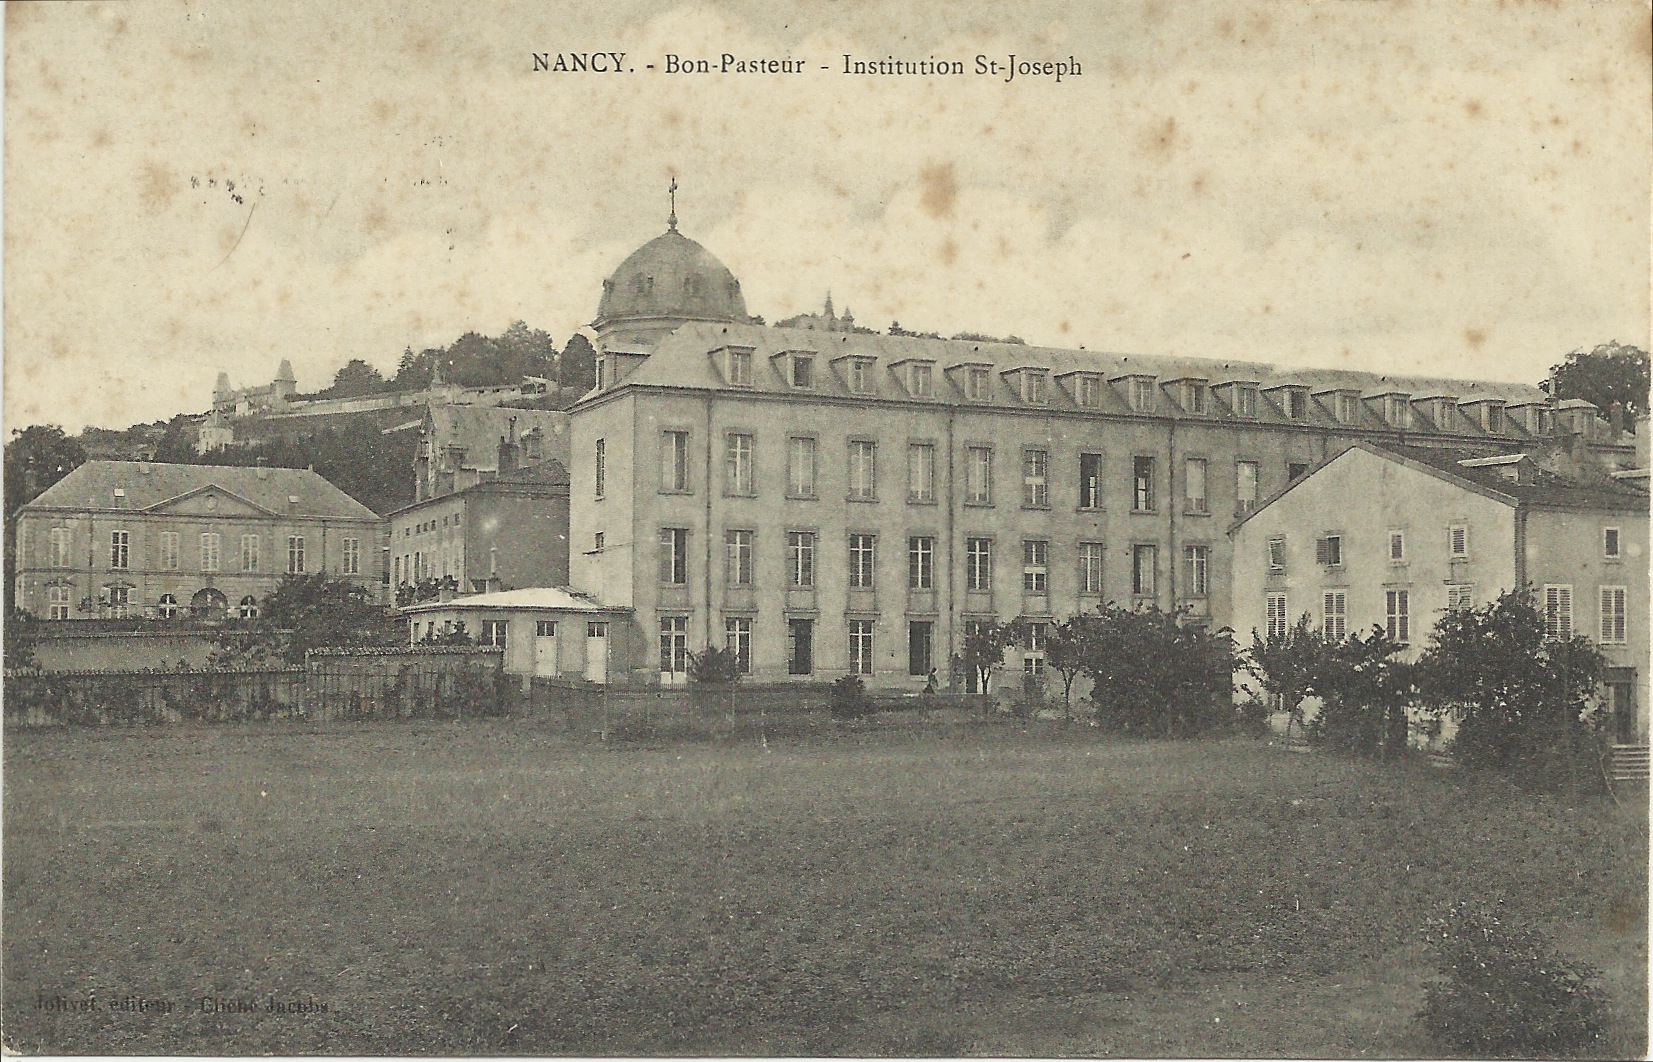 ■ Institution Saint-Joseph